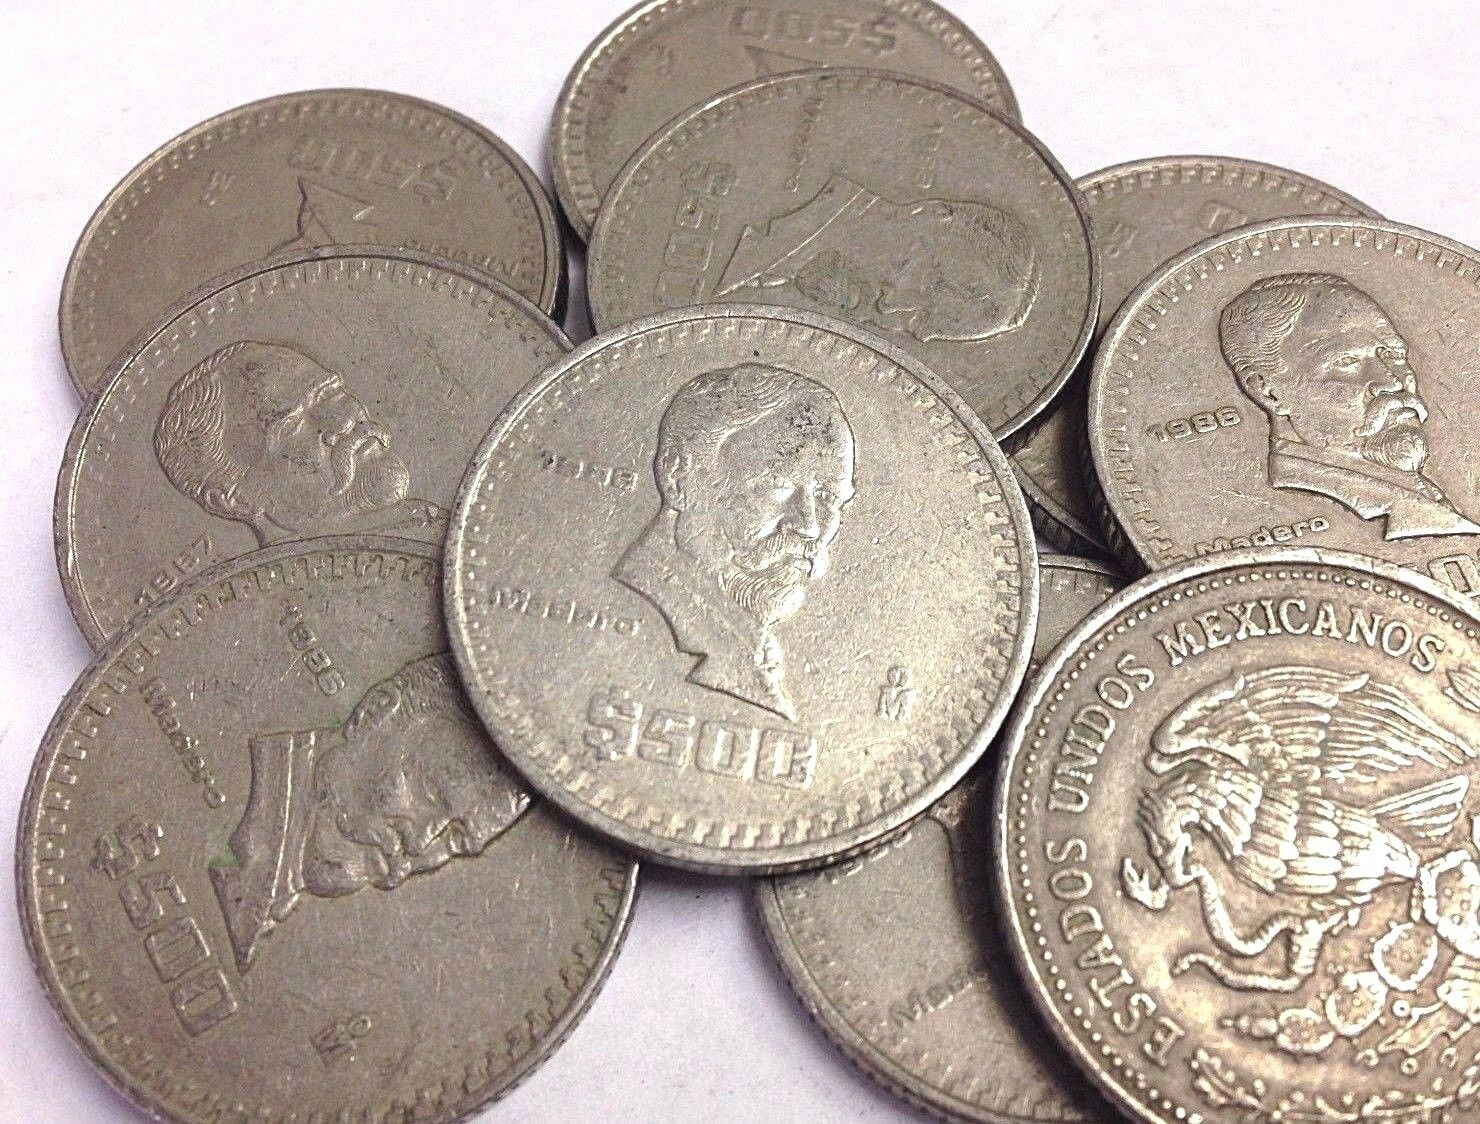 Mexico $500 Pesos Coin, Vintage Mexican Peso "madero" (1986-1992 Type)